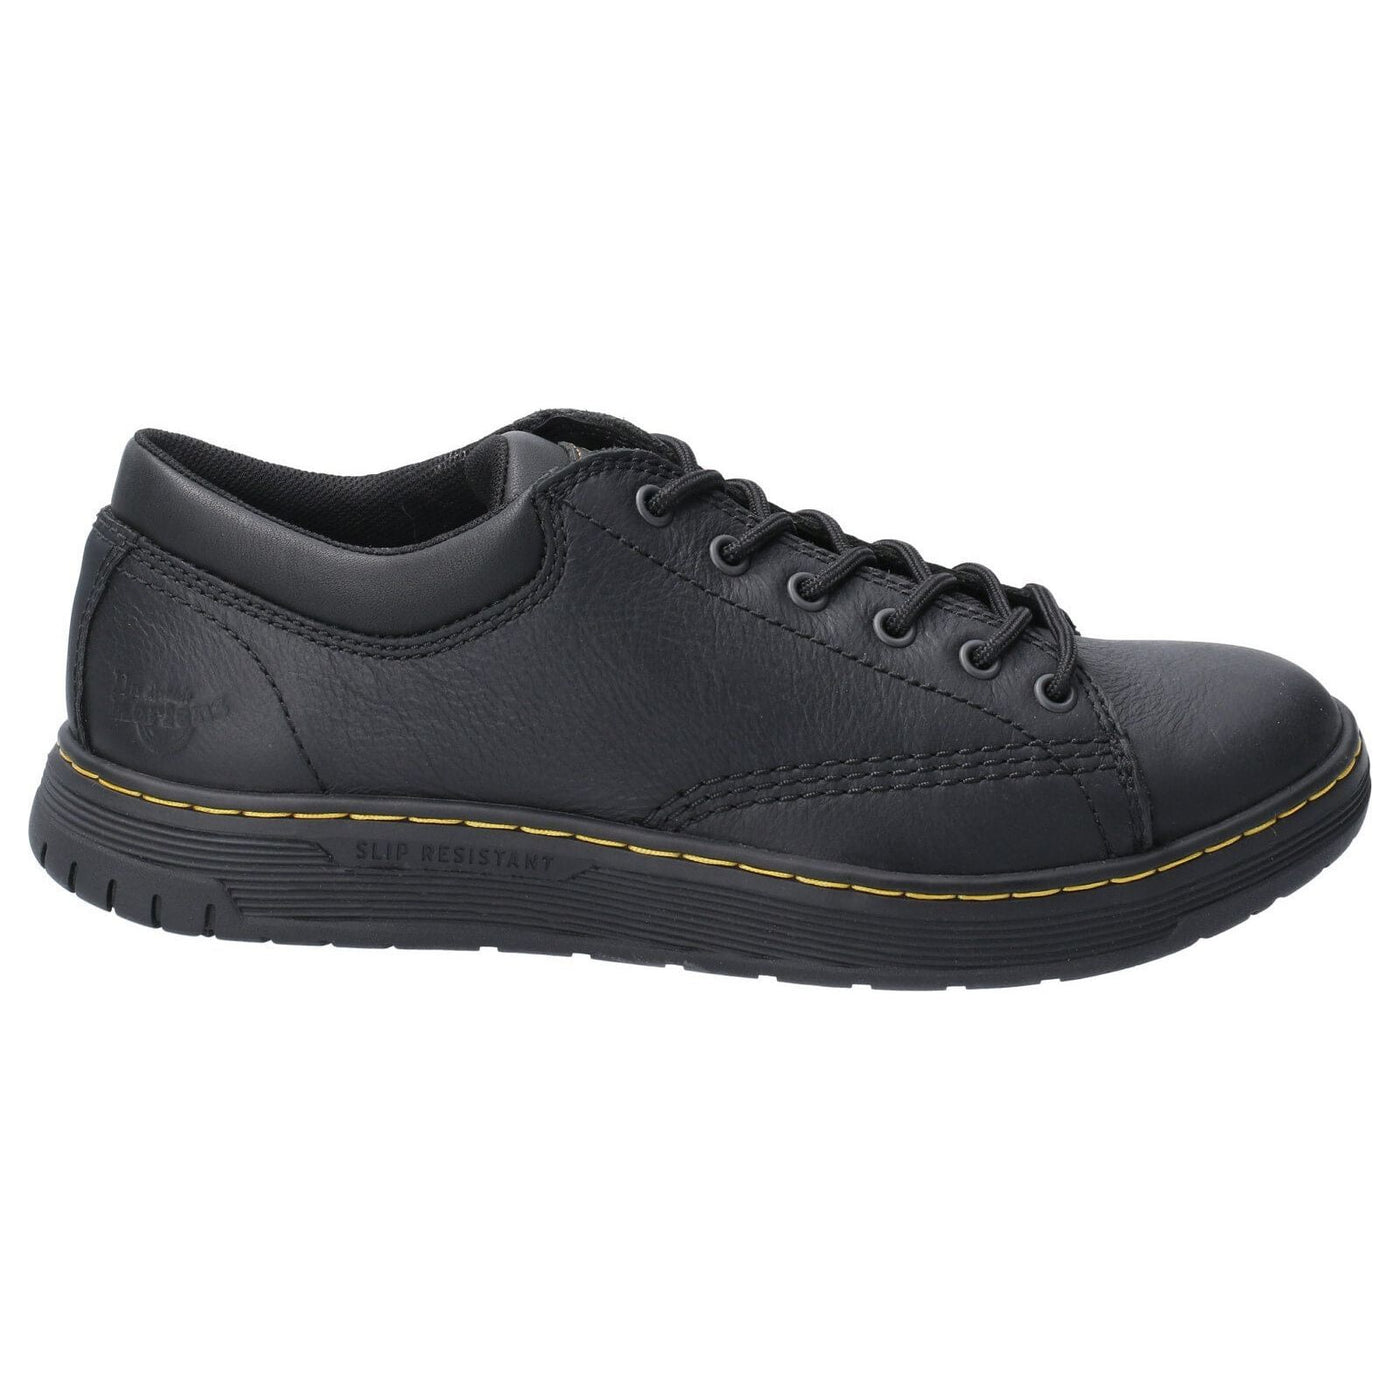 Dr Martens Maltby SR Safety Shoes-Black-4